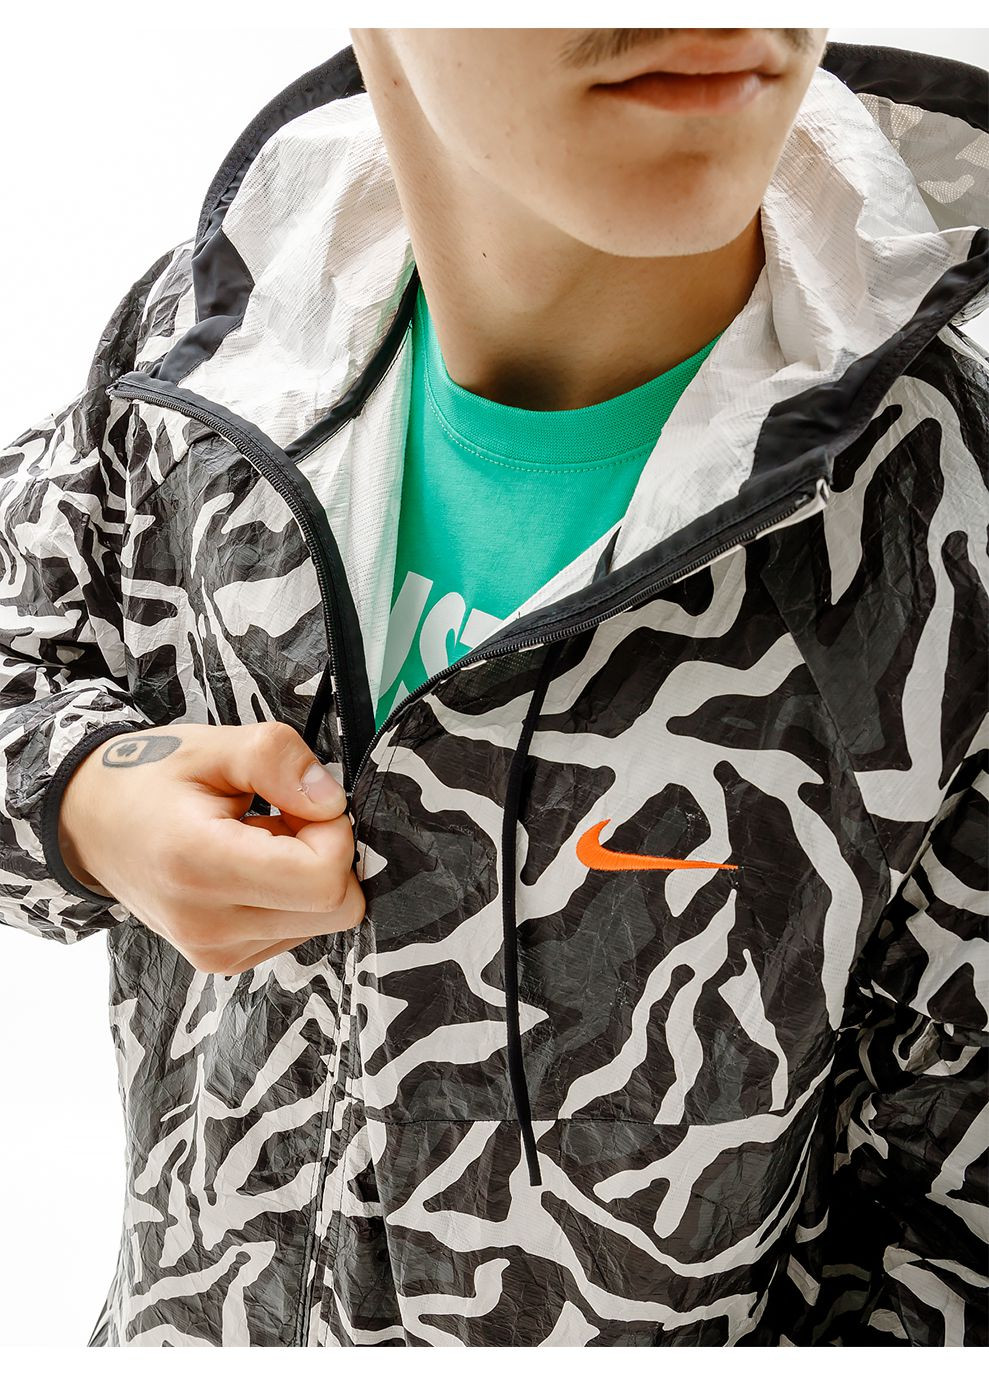 Комбинированная демисезонная мужская куртка m nsw trend jkt aop комбинированный Nike